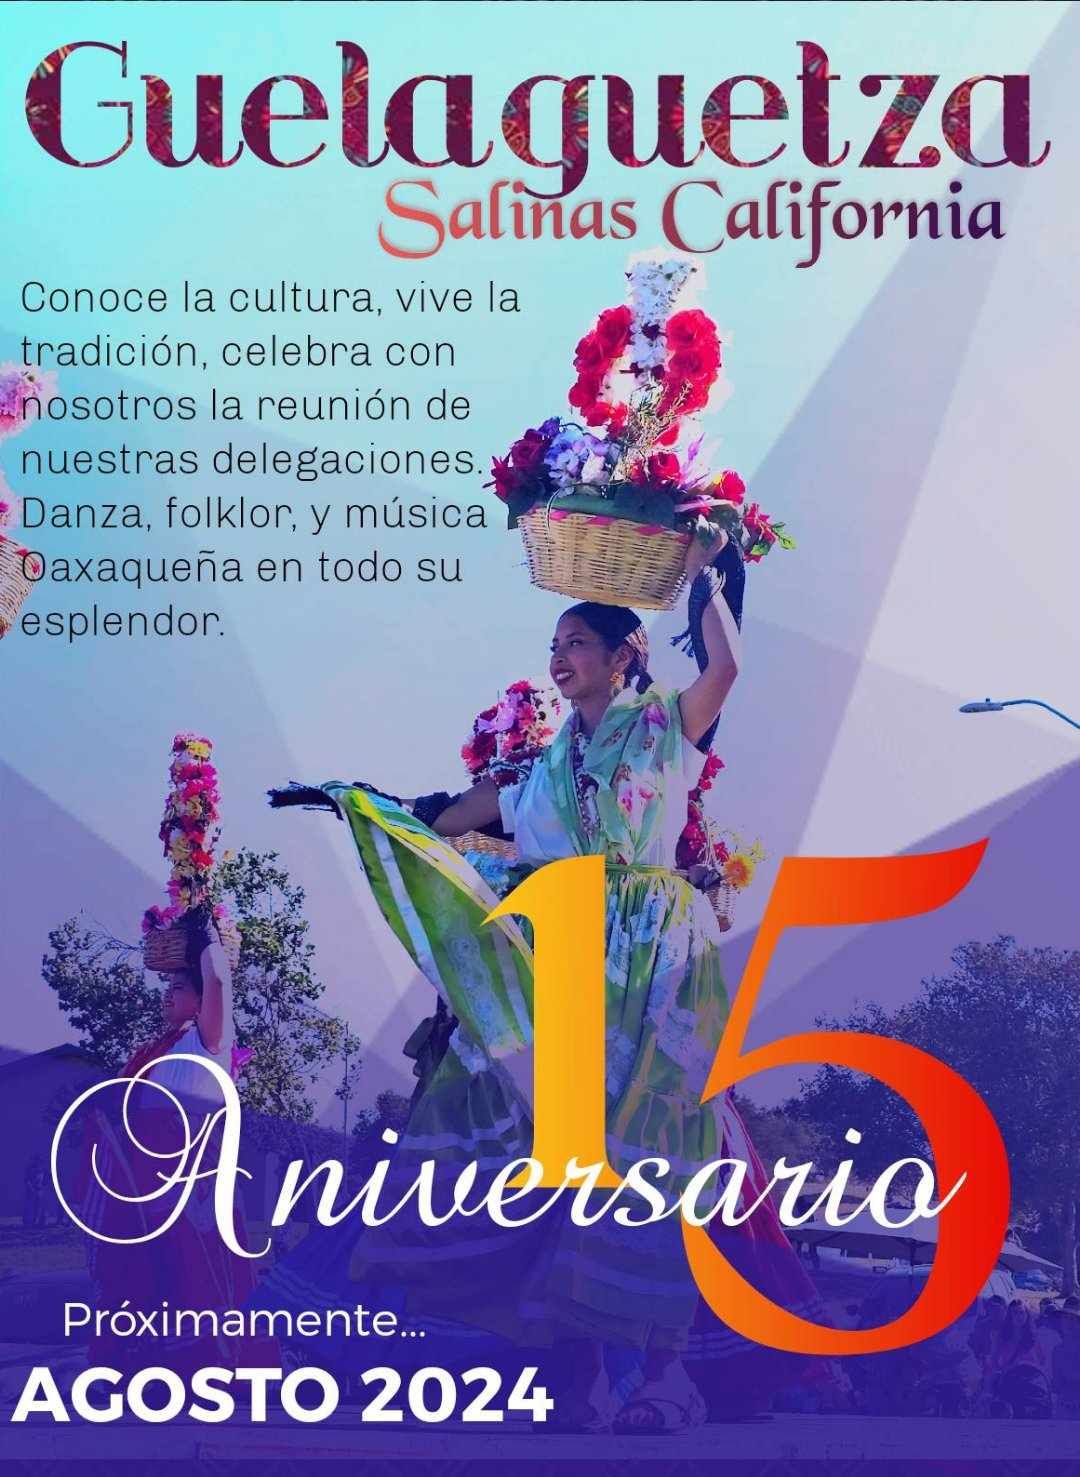 La Guelaguetza 15 aniversario en Salinas Ca